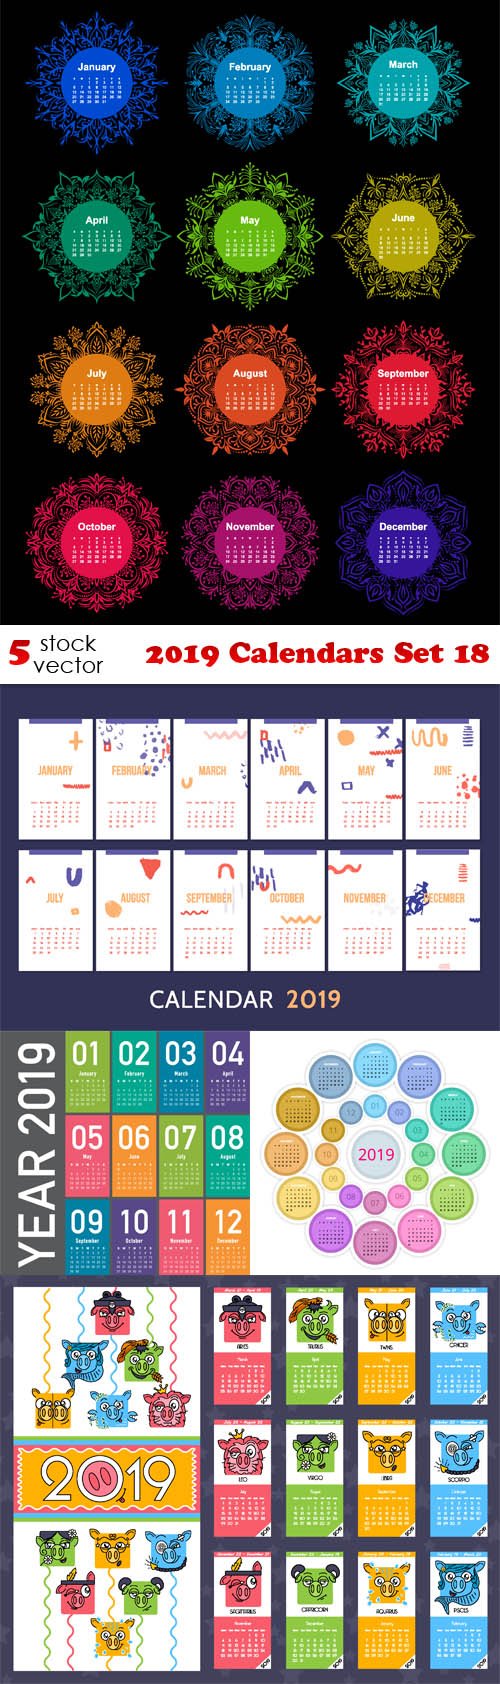 Vectors - 2019 Calendars Set 18